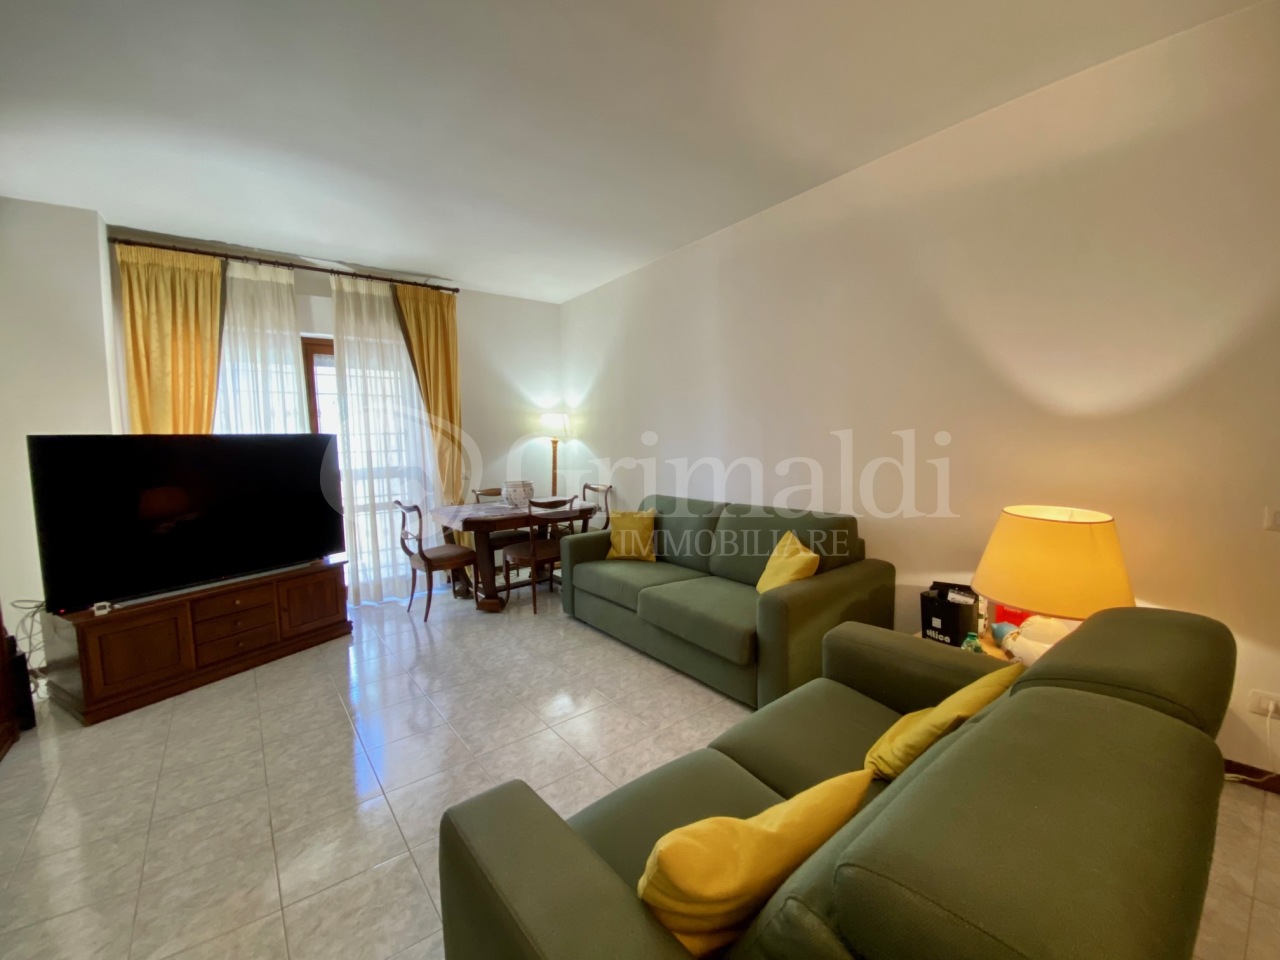 Appartamento in vendita a Anzio, 3 locali, prezzo € 160.000 | PortaleAgenzieImmobiliari.it